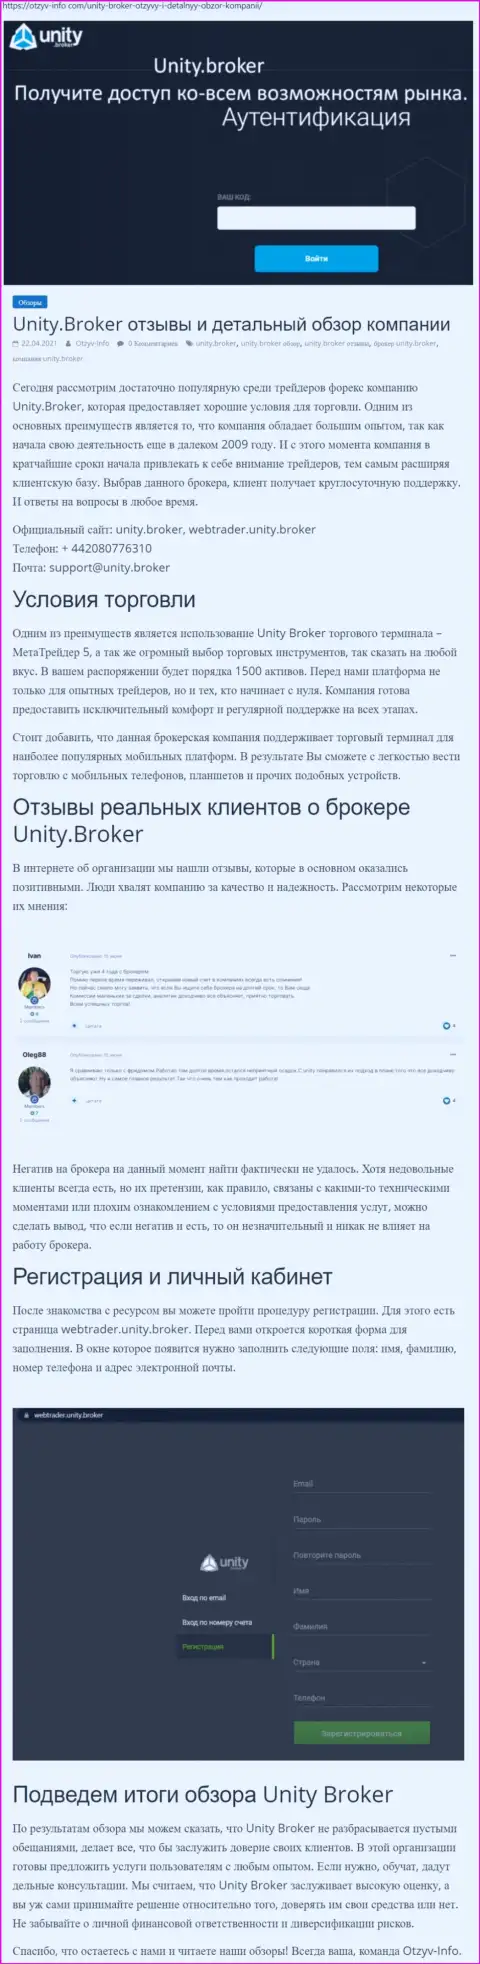 Обзор работы Форекс-брокерской компании UnityBroker на информационном ресурсе Отзыв Инфо Ком